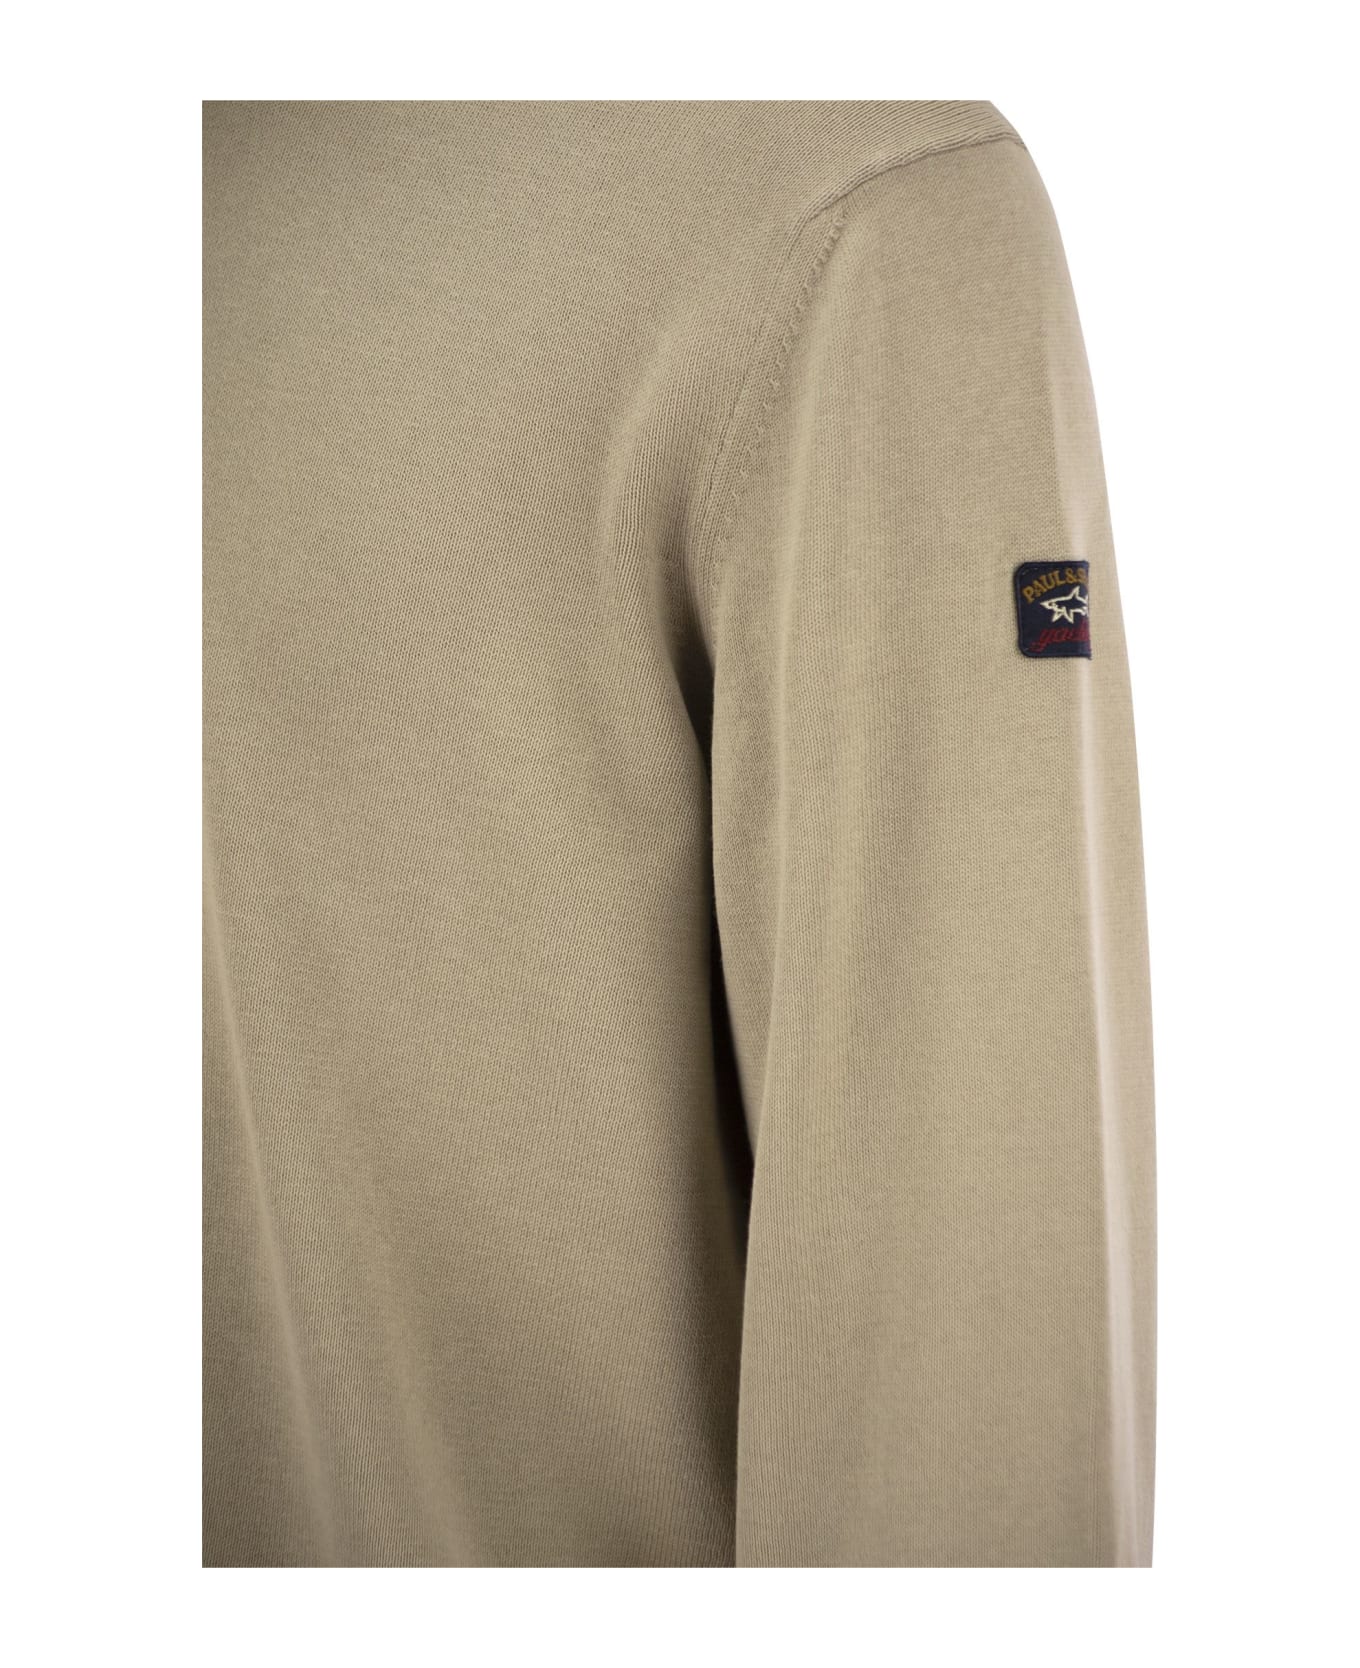 Paul&Shark Garment-dyed Cotton Jersey - Beige